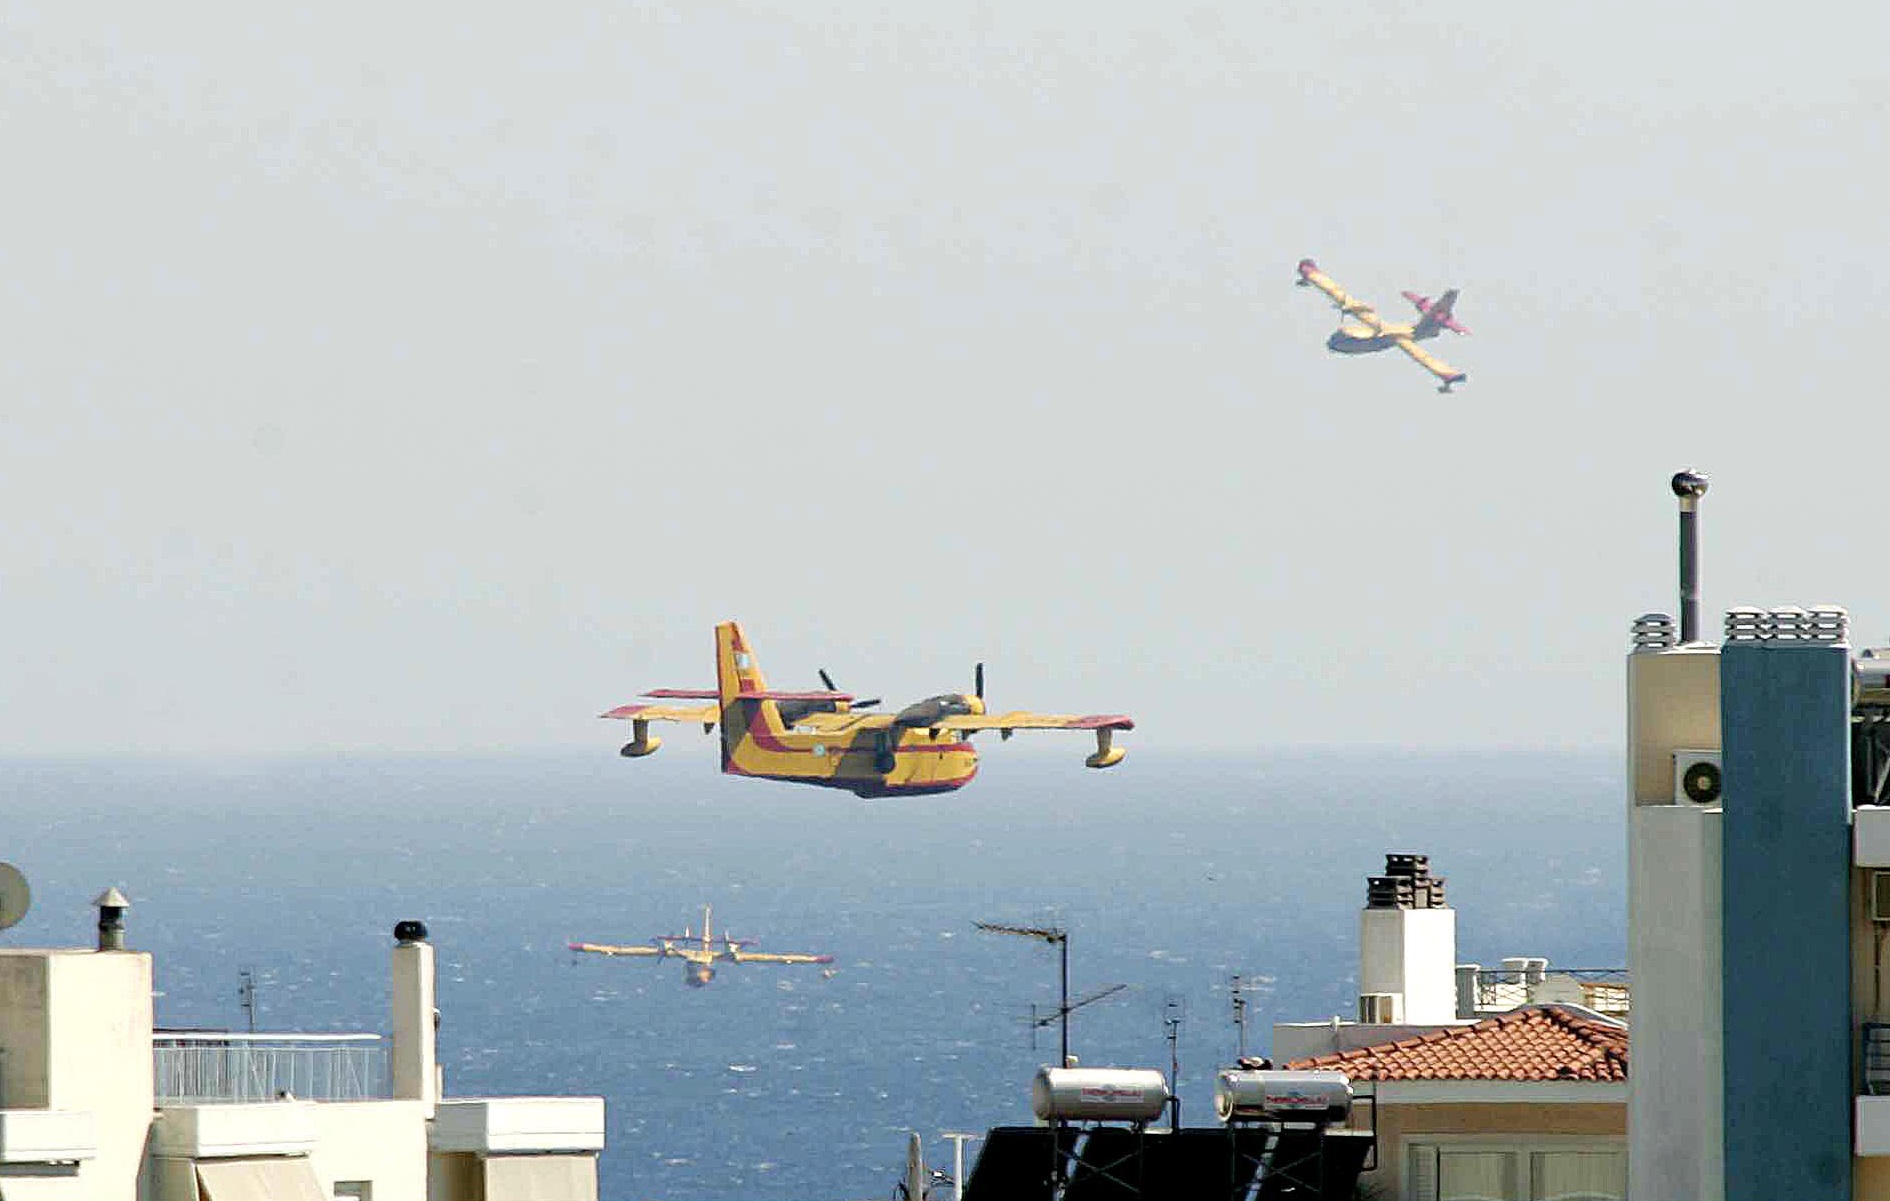 Η Κομισιόν χρηματοδοτεί την αγορά 12 πυροσβεστικών αεροπλάνων - Μέρος θα φιλοξενηθεί και στην Ελλάδα